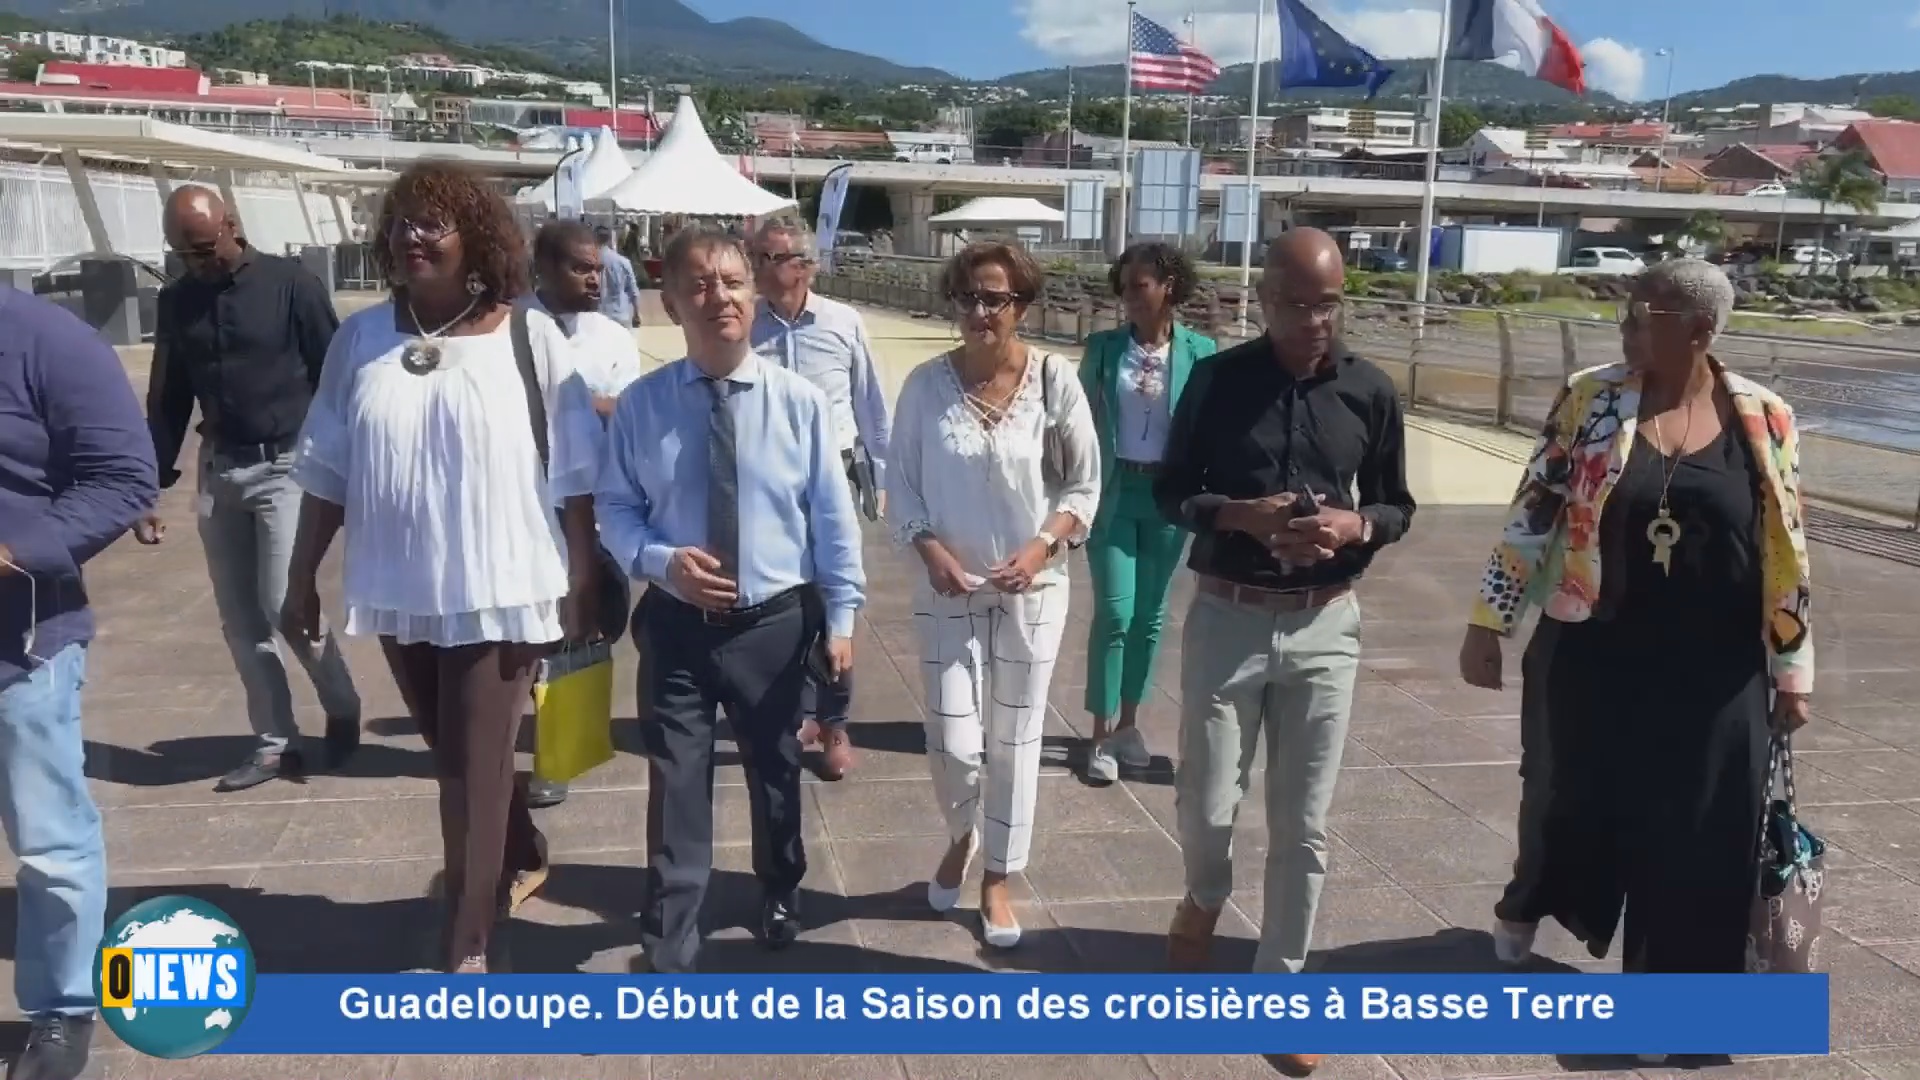 [Vidéo]Guadeloupe. Début de la Saison des croisières à Basse Terre